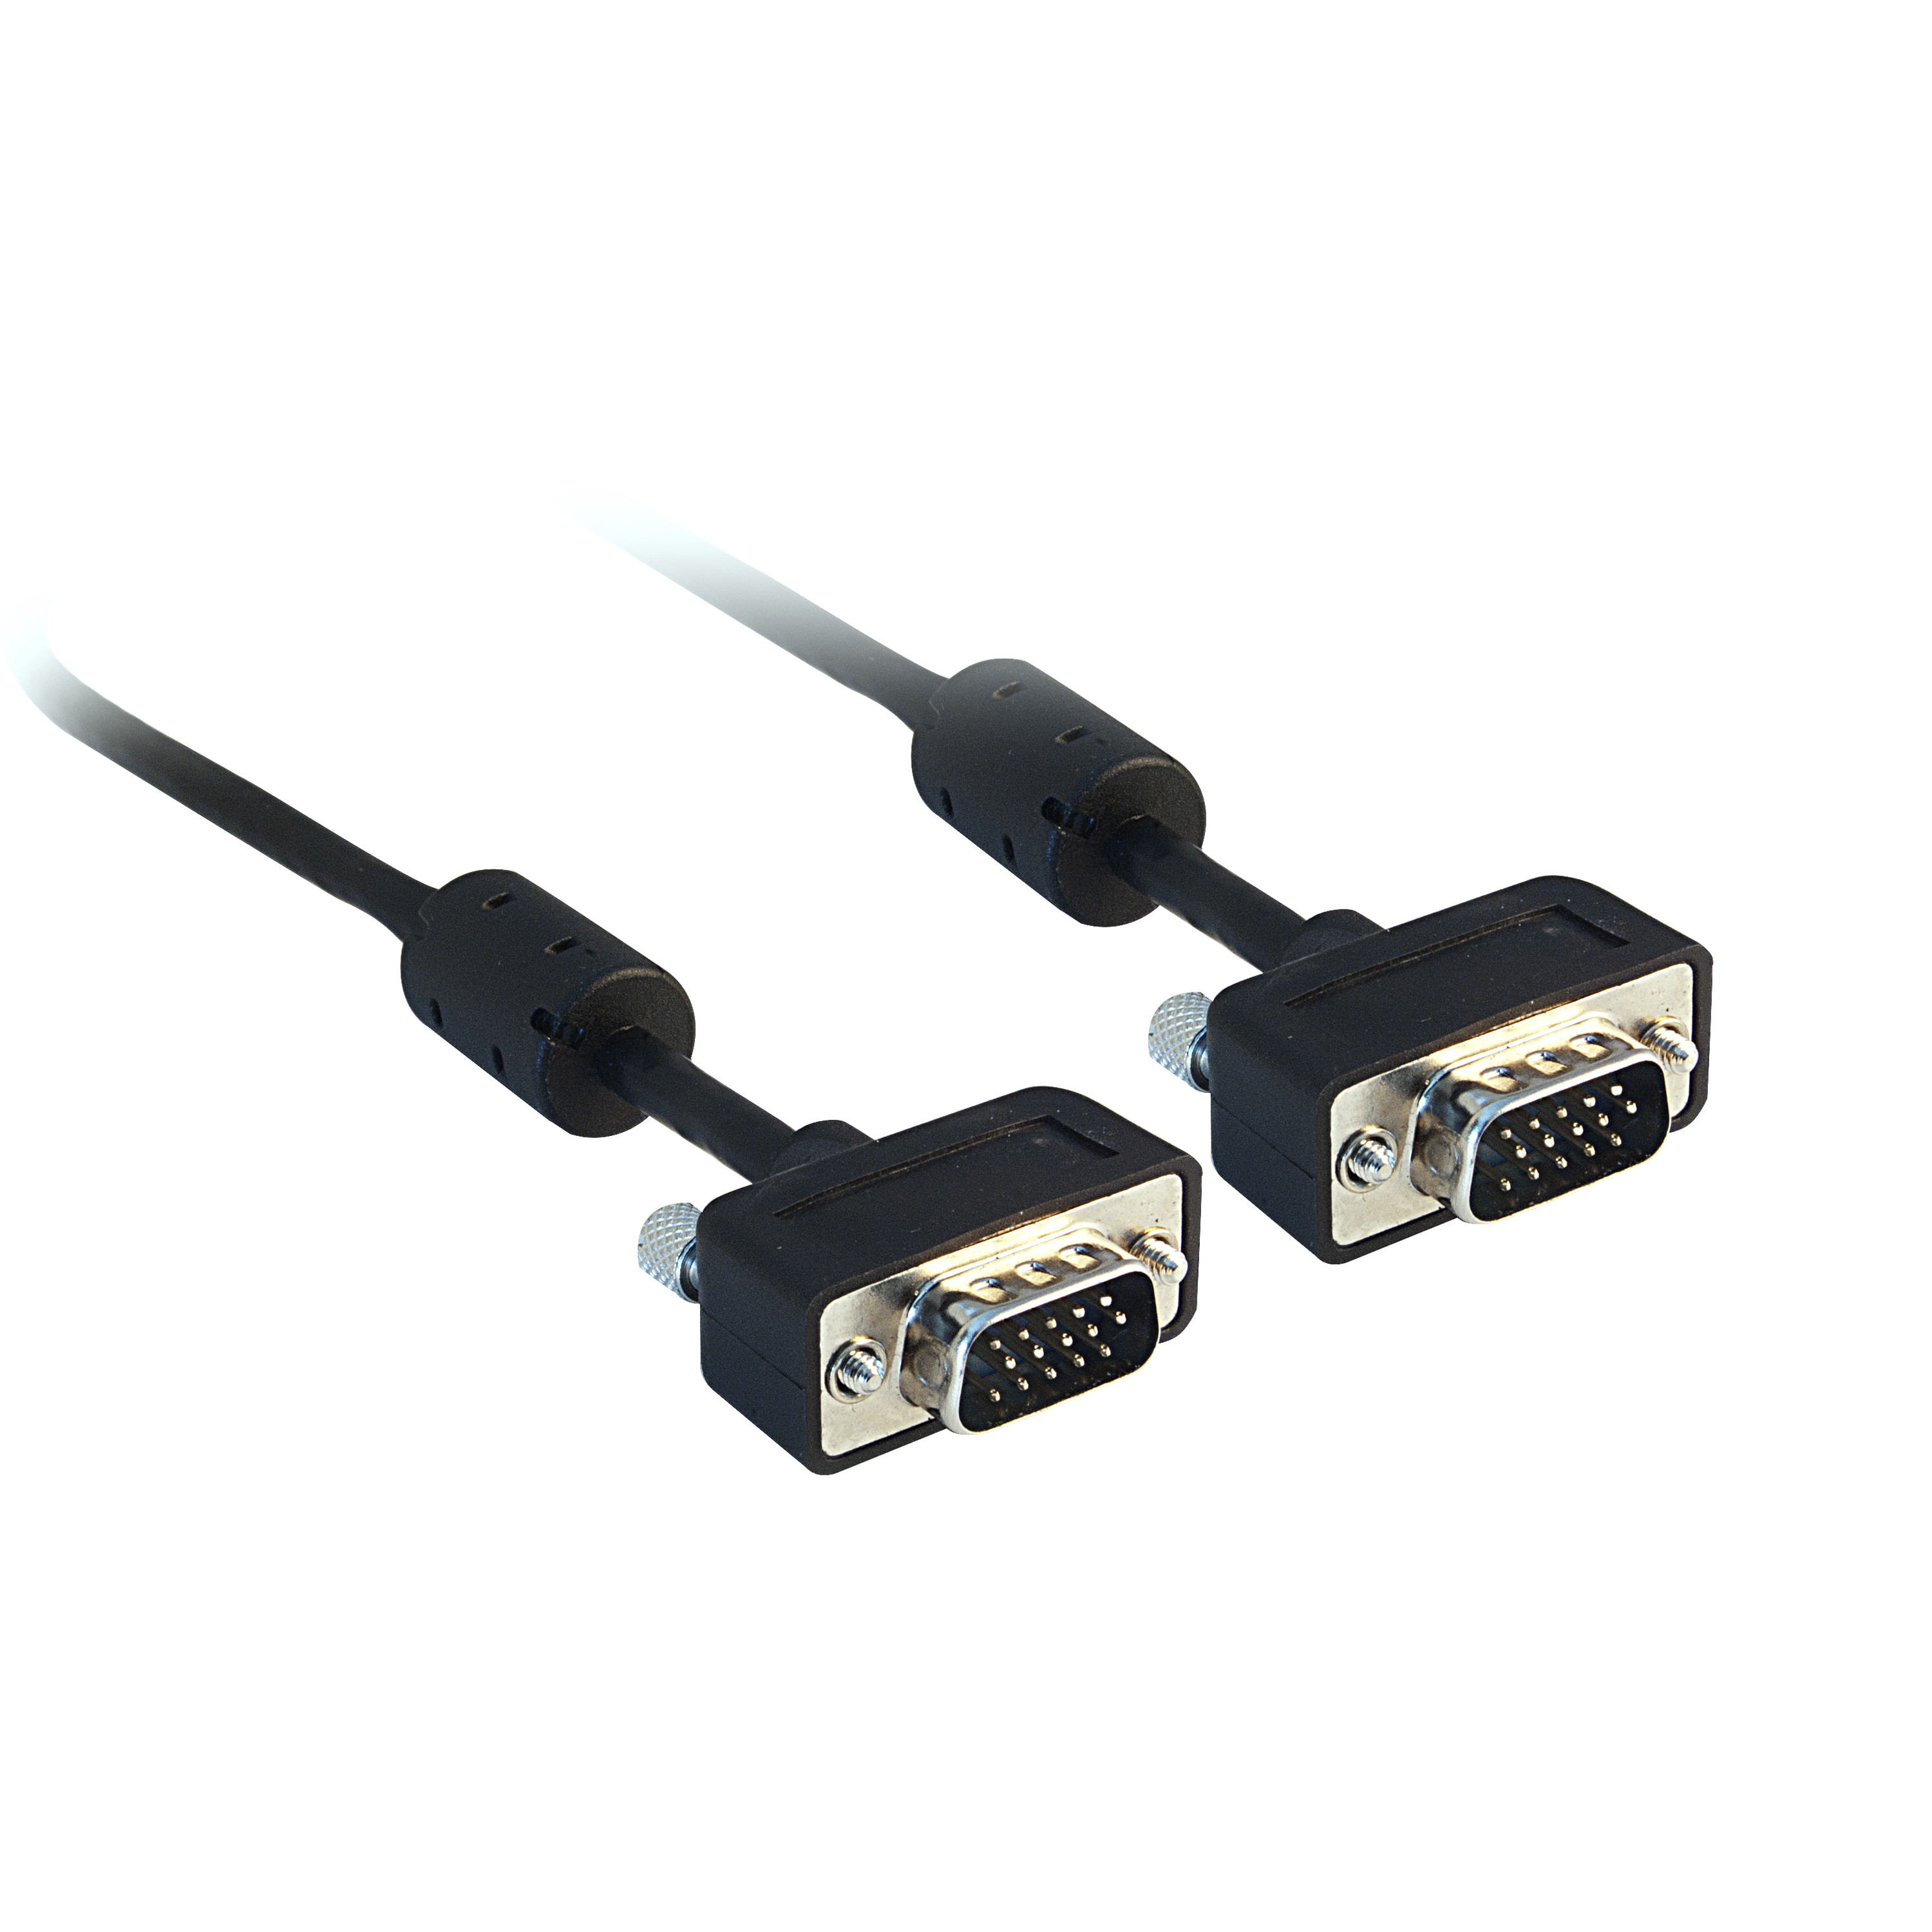 InstallerParts 6 ft SVGA Male to Male Cable w/Ferrite Core 